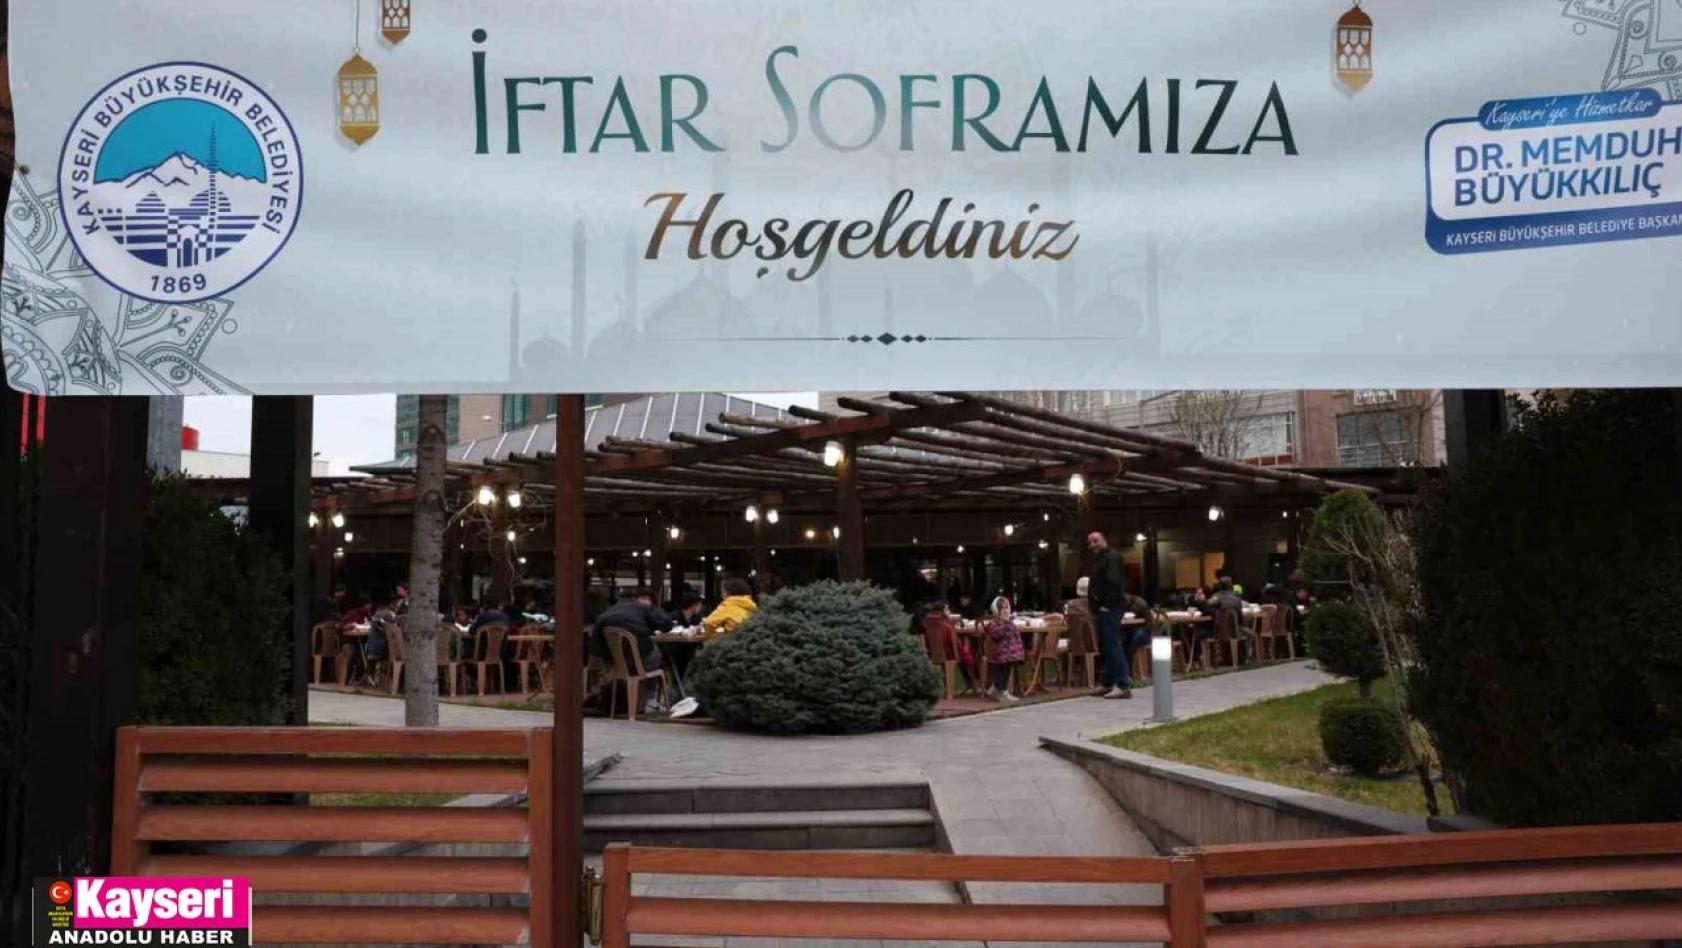 Hem Kayseri'ye hem deprem bölgelerine iftar çadırı